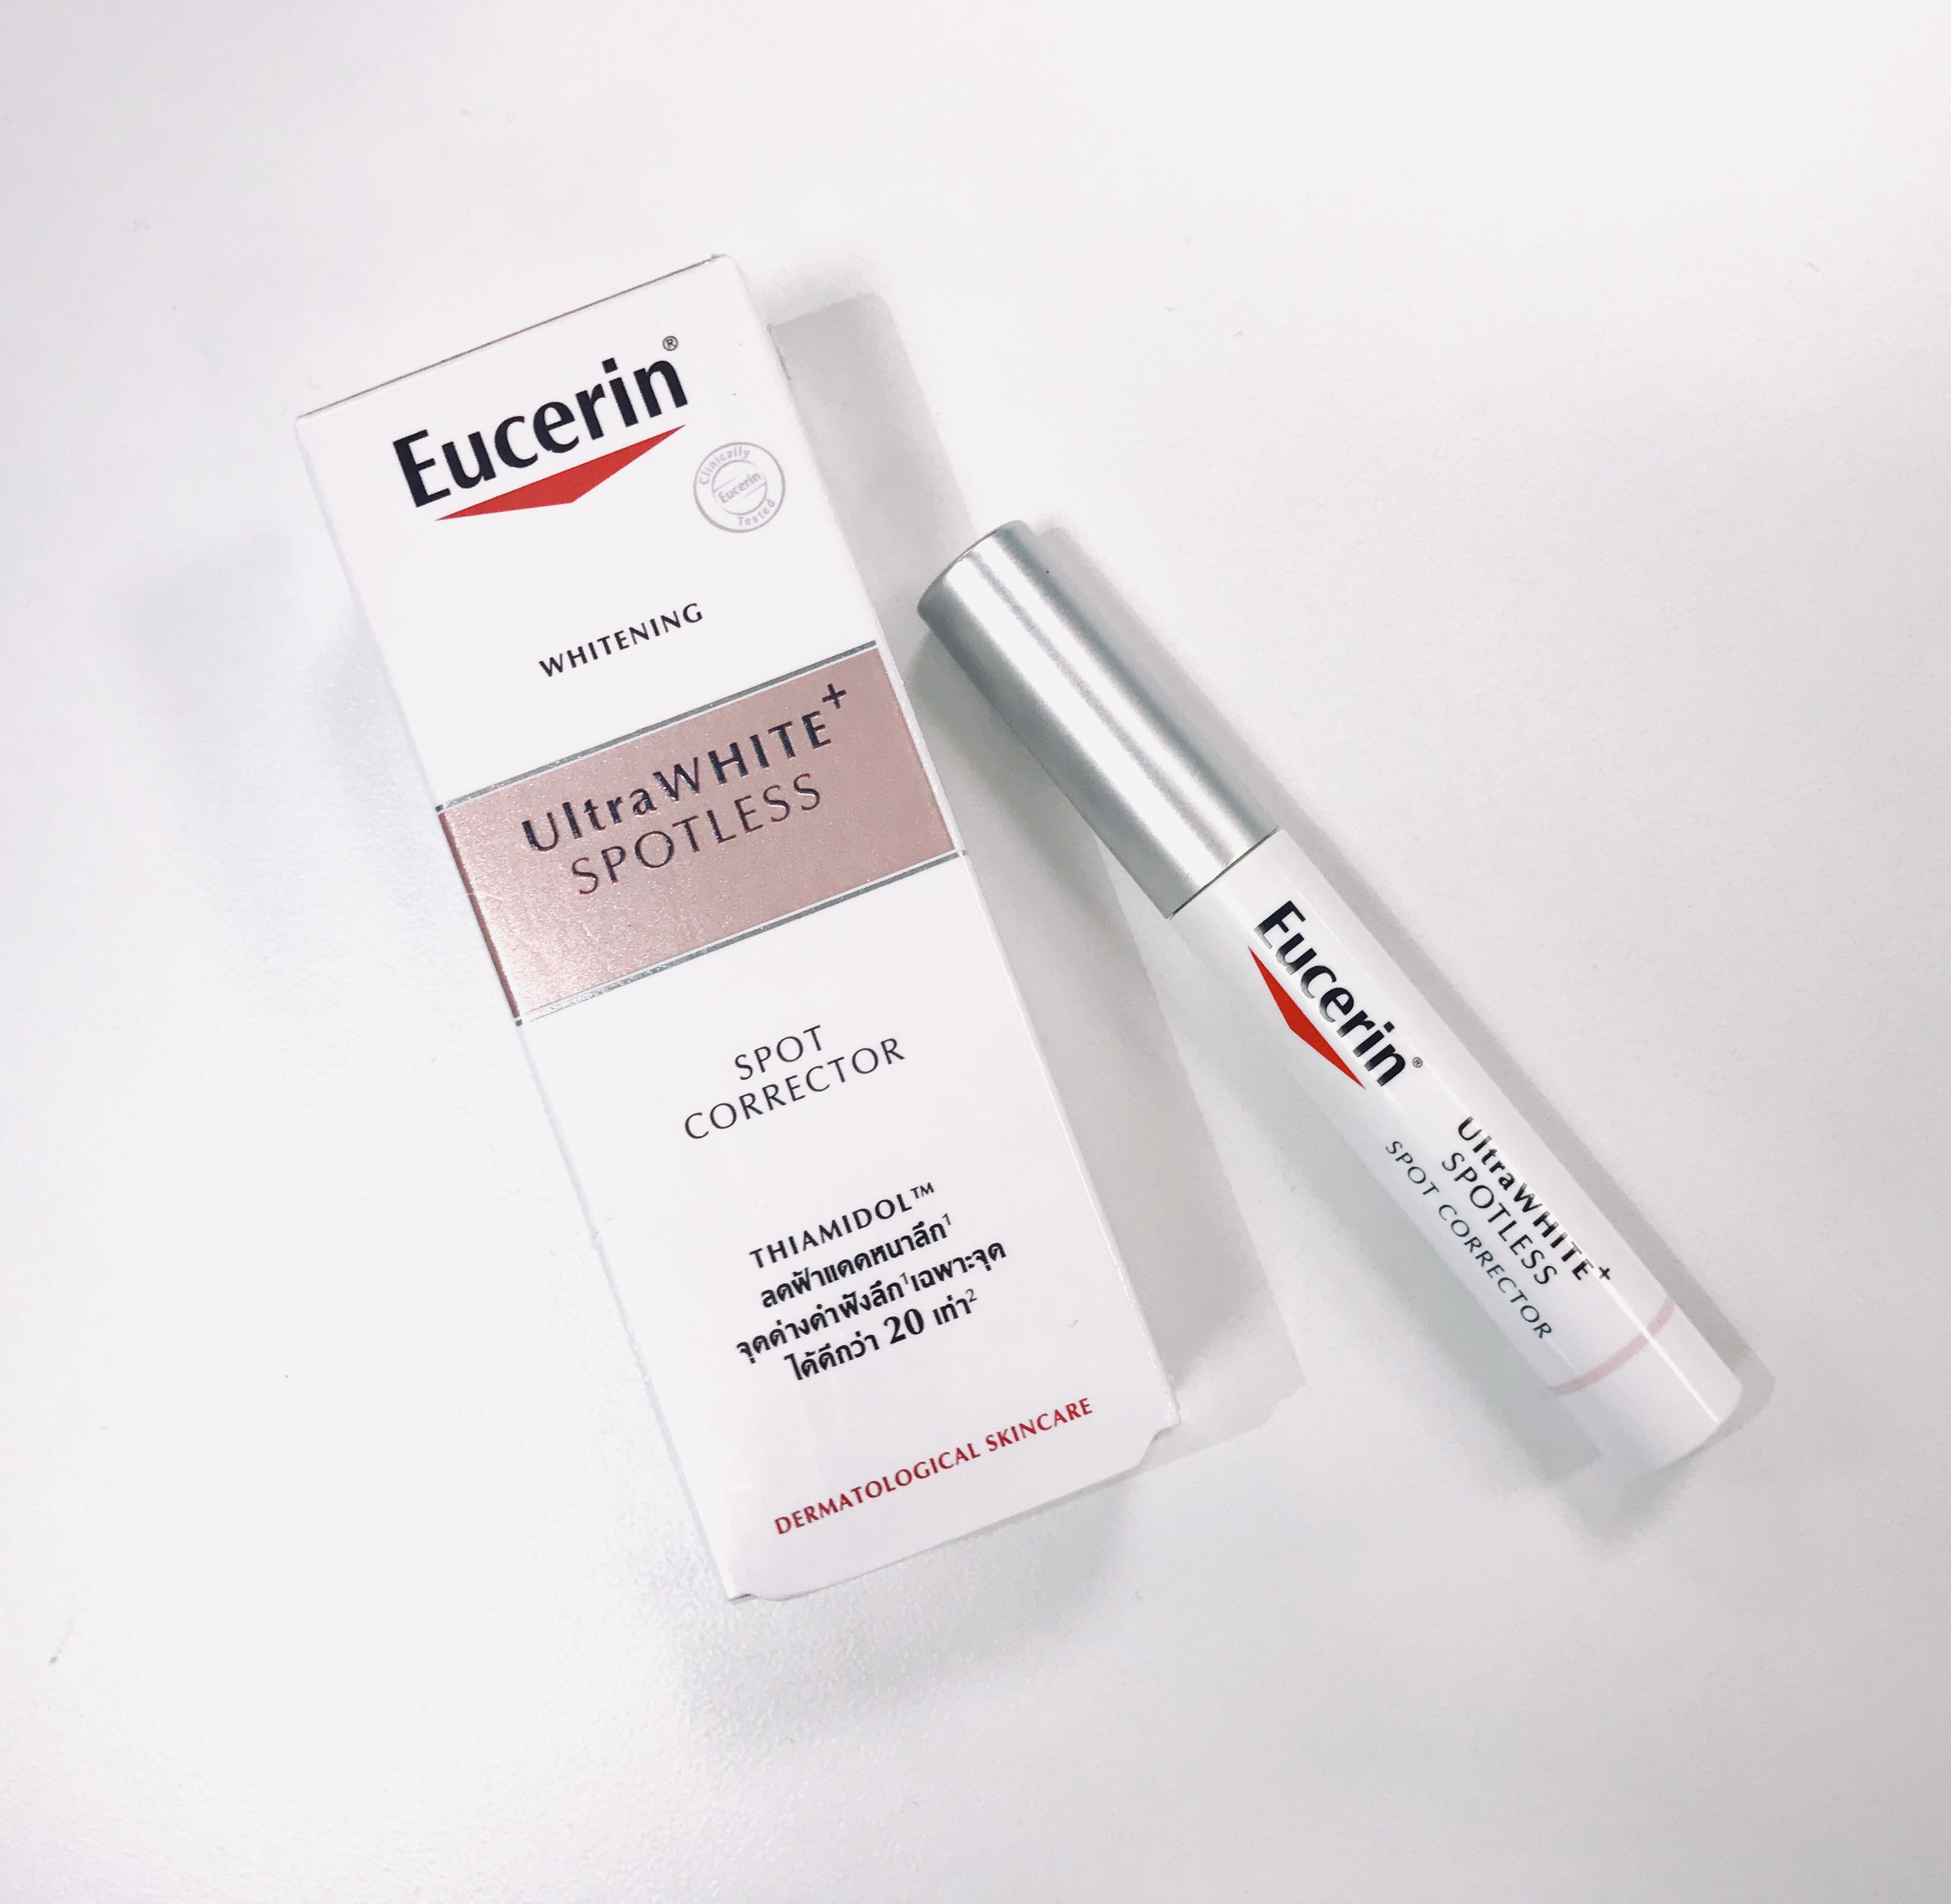 tinh chất đặc trị thâm nám Eucerin UltraWHITE + SPOTLESS Spot Corrector